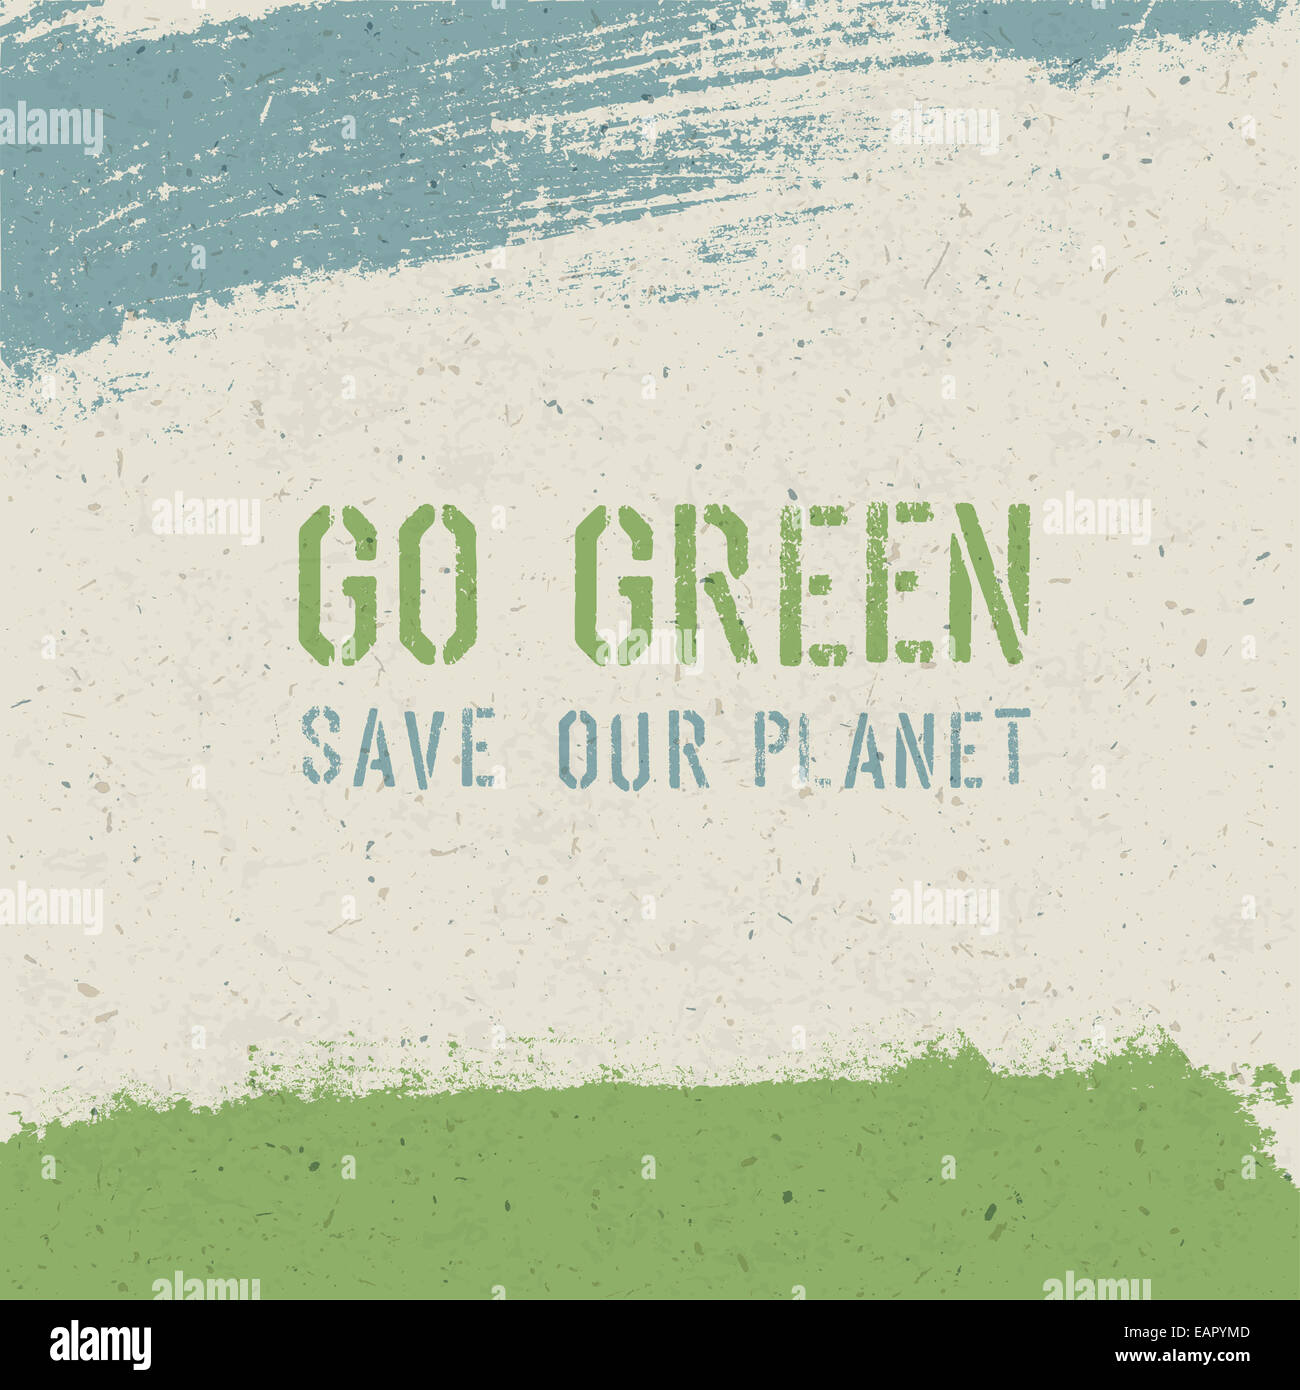 Go green concept. Vector Stock Photo